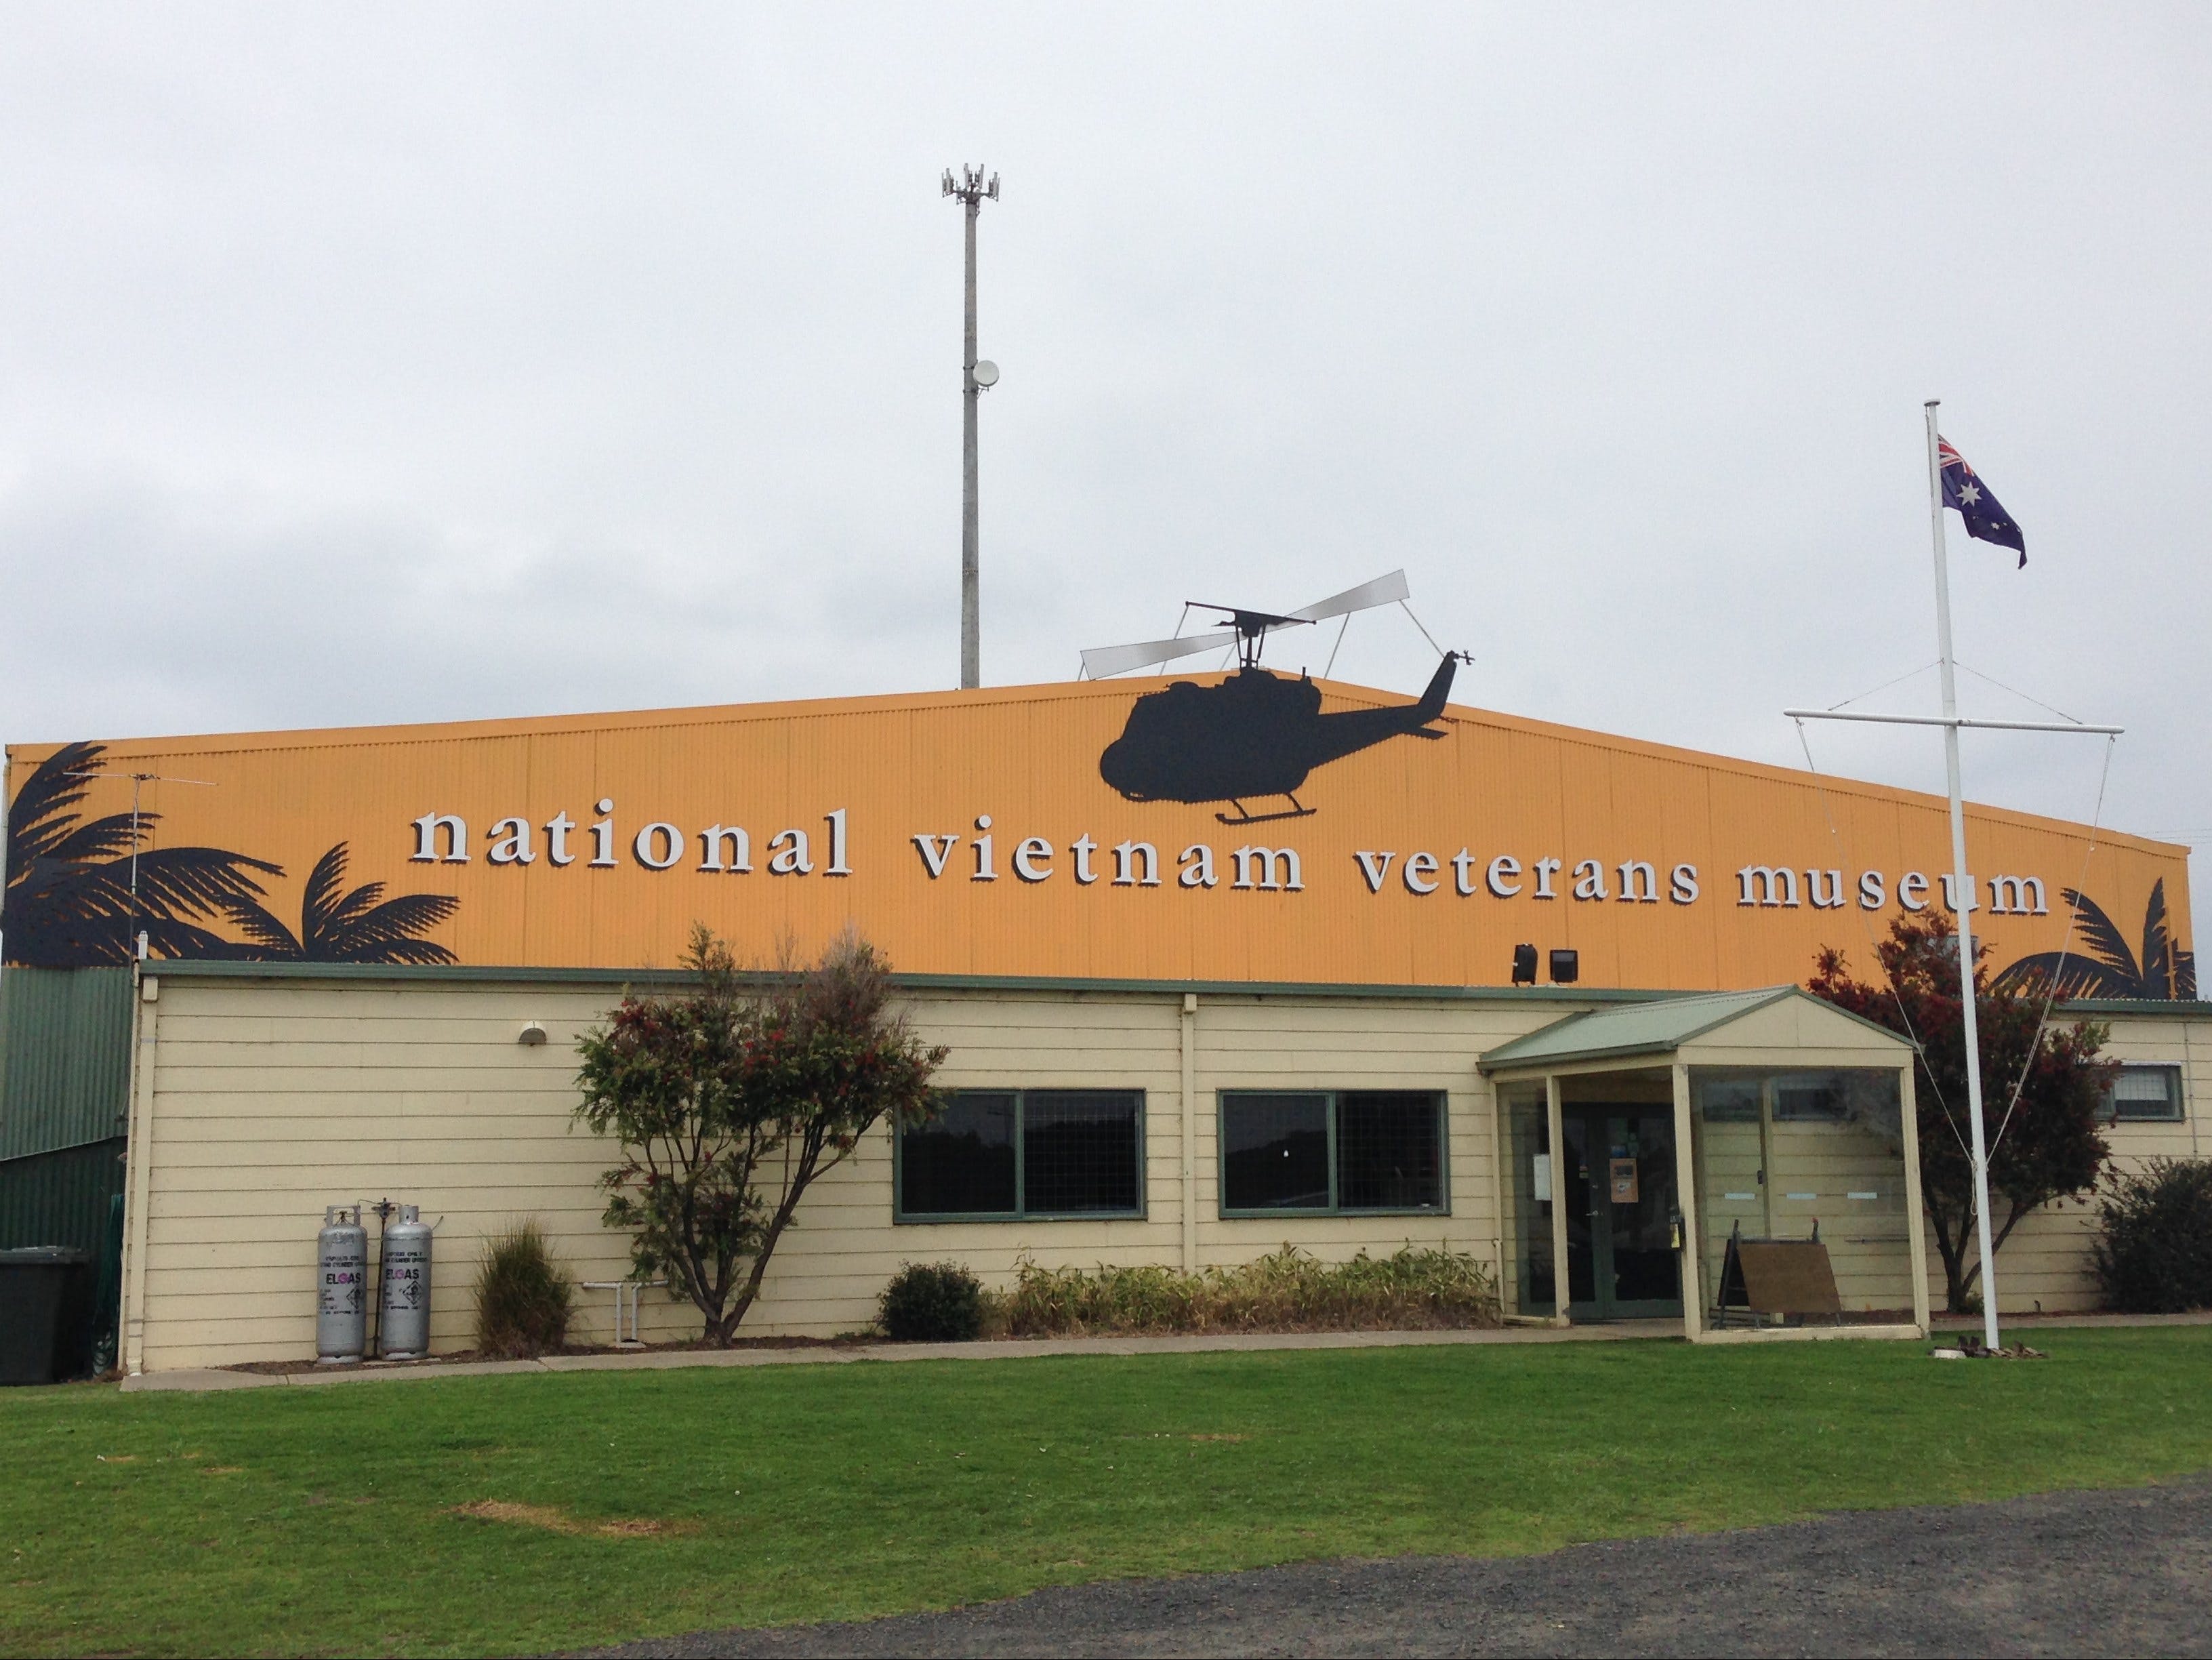 National Vietnam Veterans Museum - Nambucca Heads Accommodation